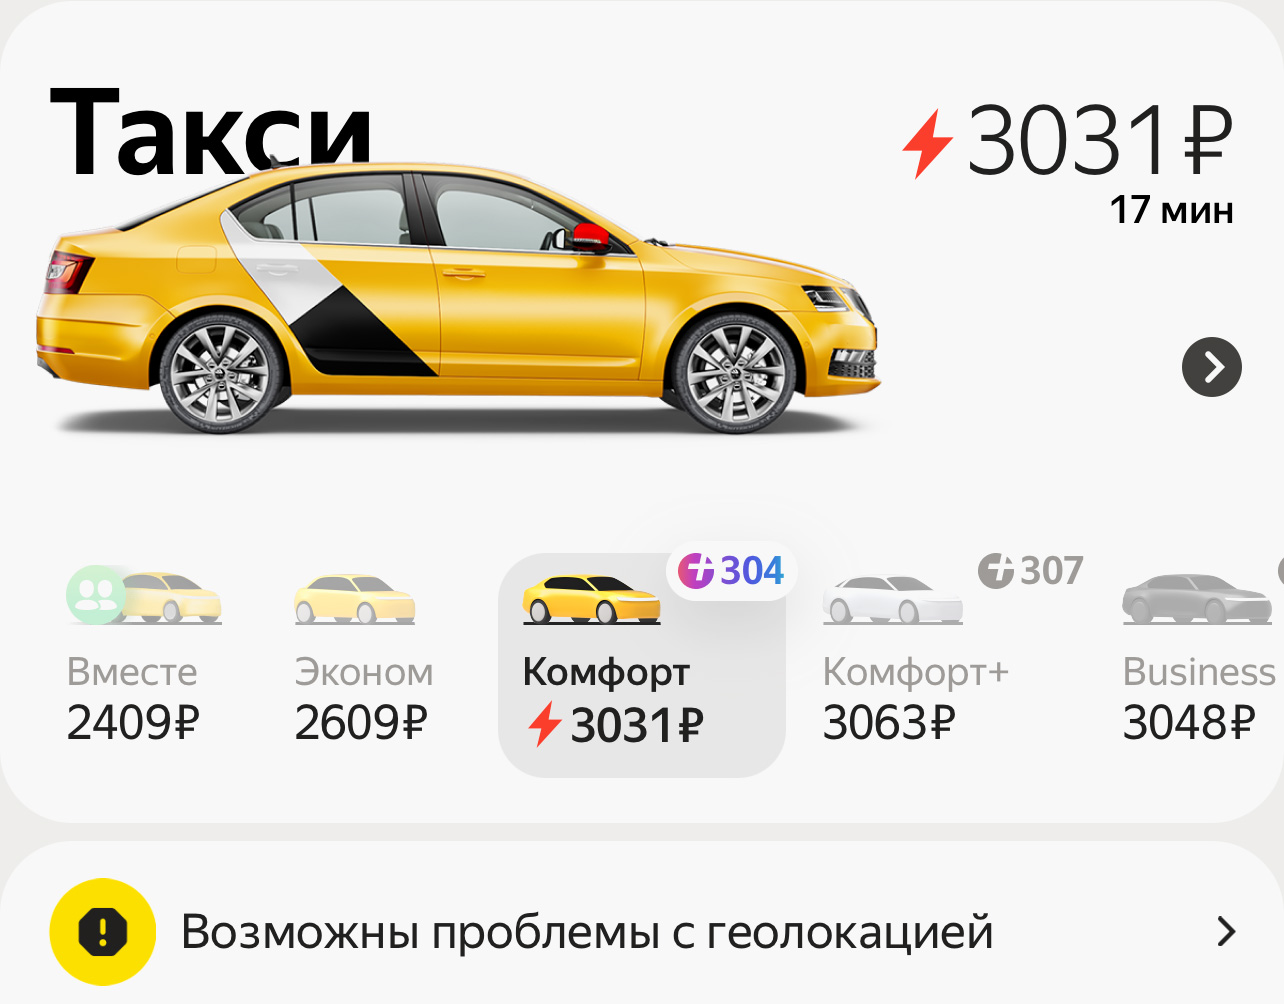 Почему такси в Москве стоит так дорого, а водители себе так много позволяют